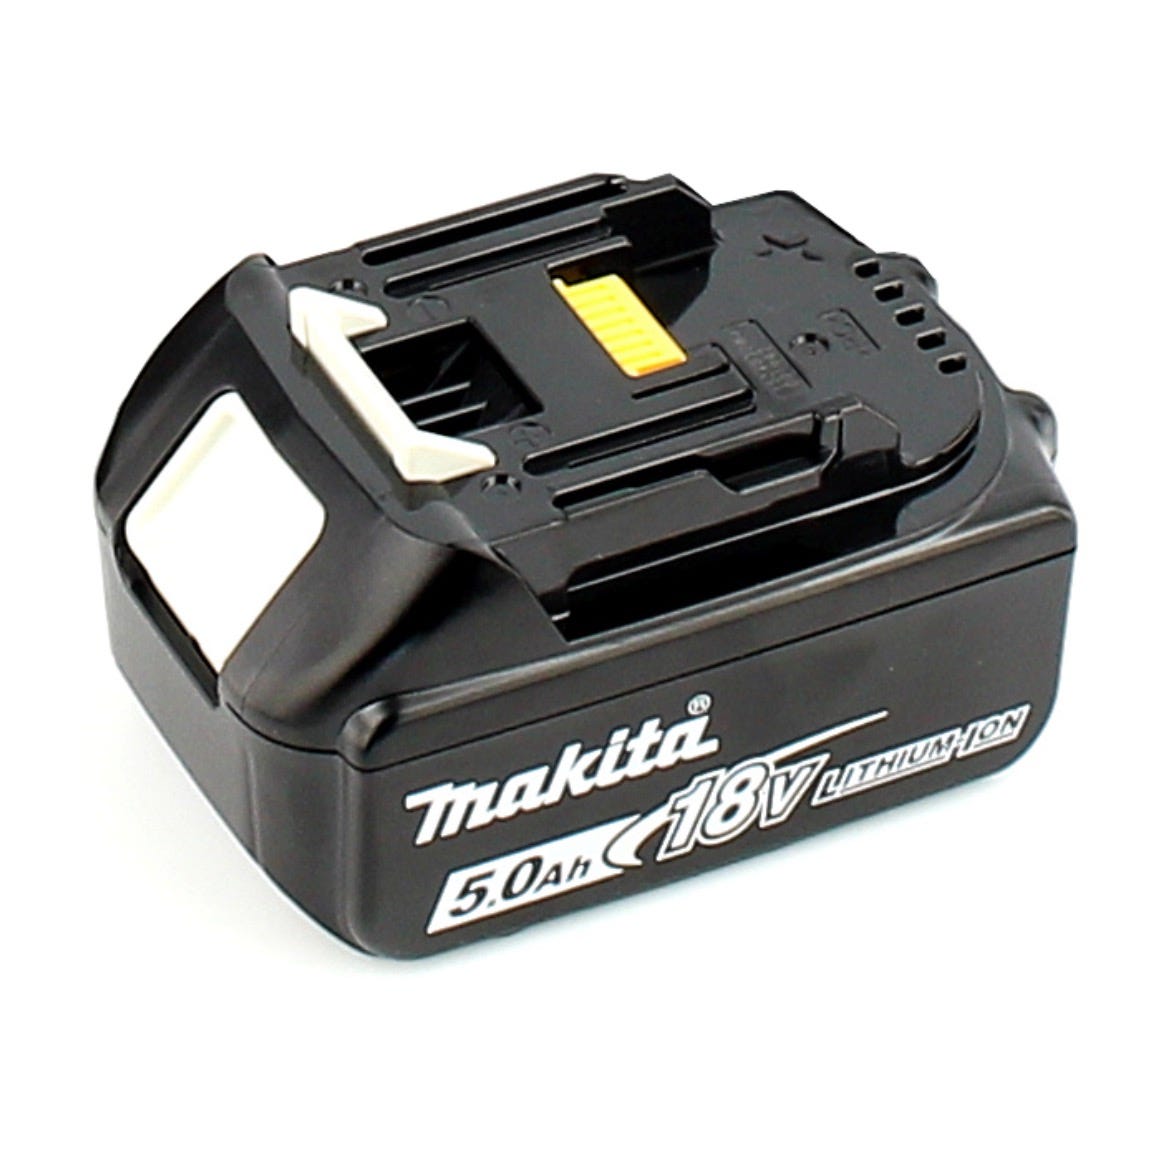 Makita DVP 180 T1 Pompe à vide sans fil 18 V + 1x Batterie BL 1850 5,0 Ah - sans Chargeur 2